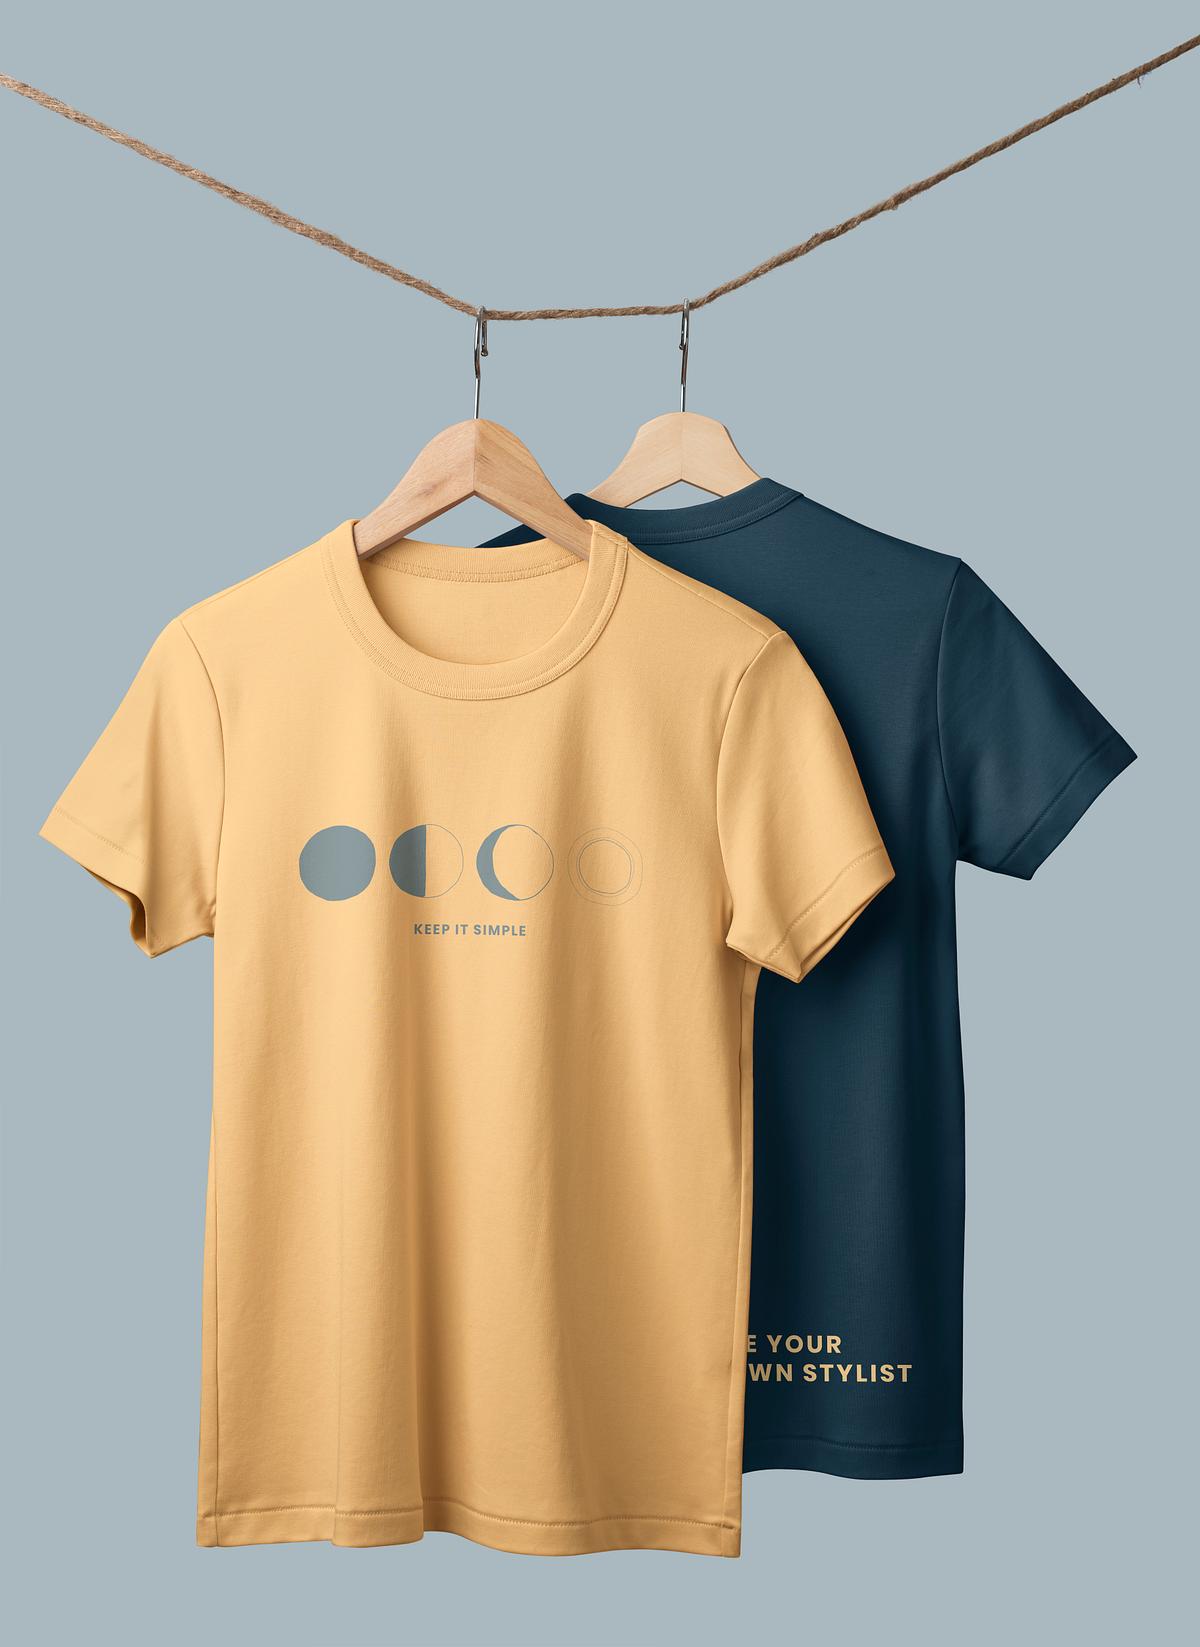 Printed t-shirt mockup, casual apparel | Premium PSD Mockup - rawpixel